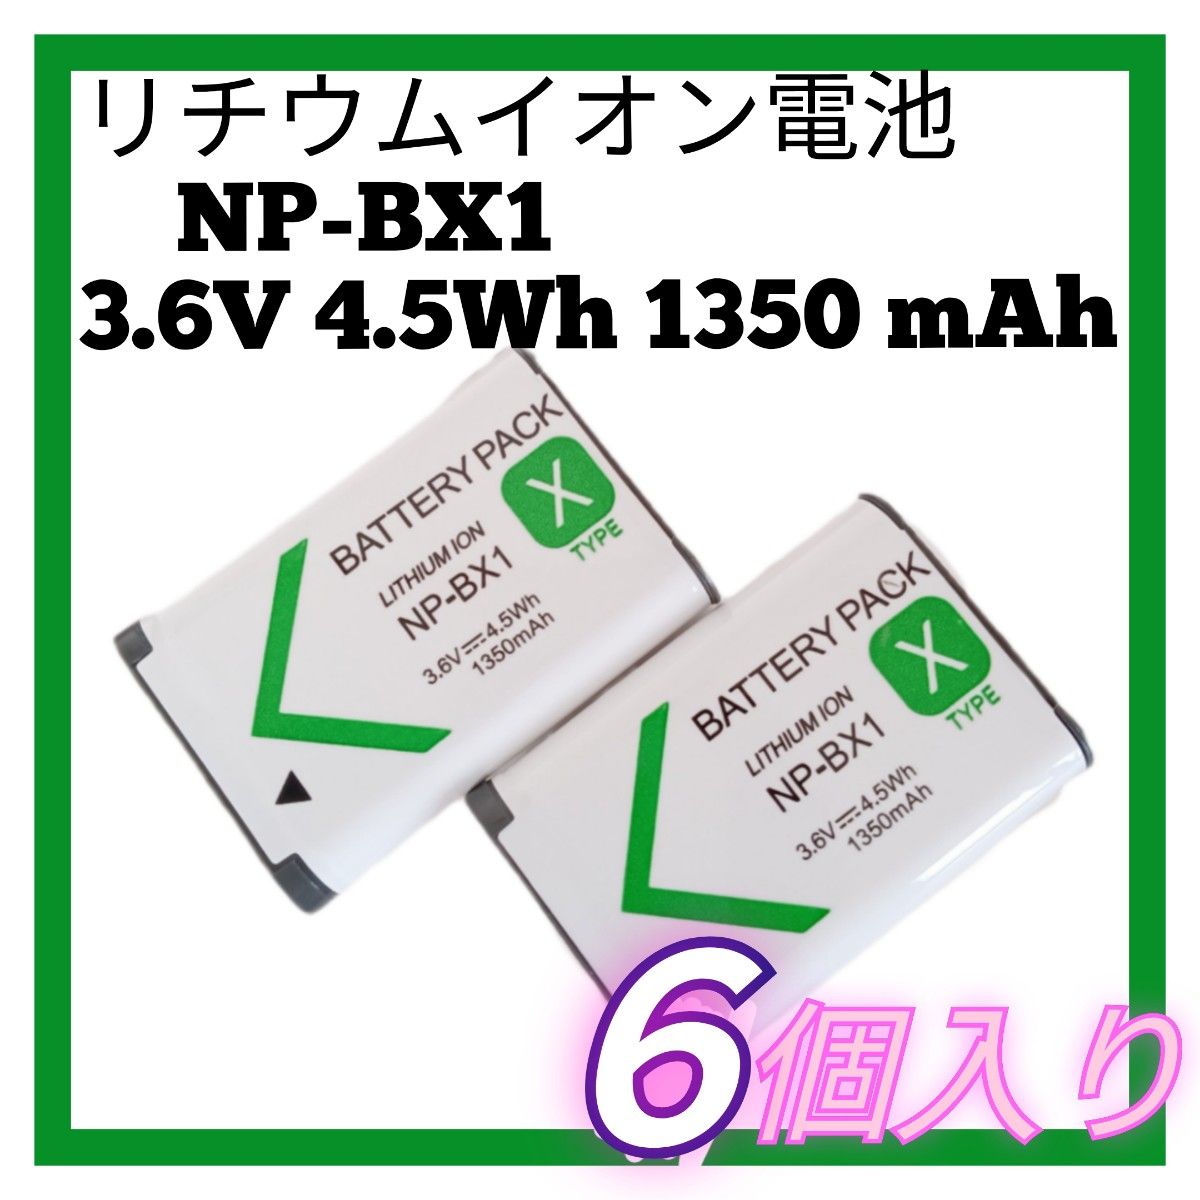 【新品】リチウムイオン電池 NP-BX1 3.6V 4.5Wh 1350mAh ６個入り